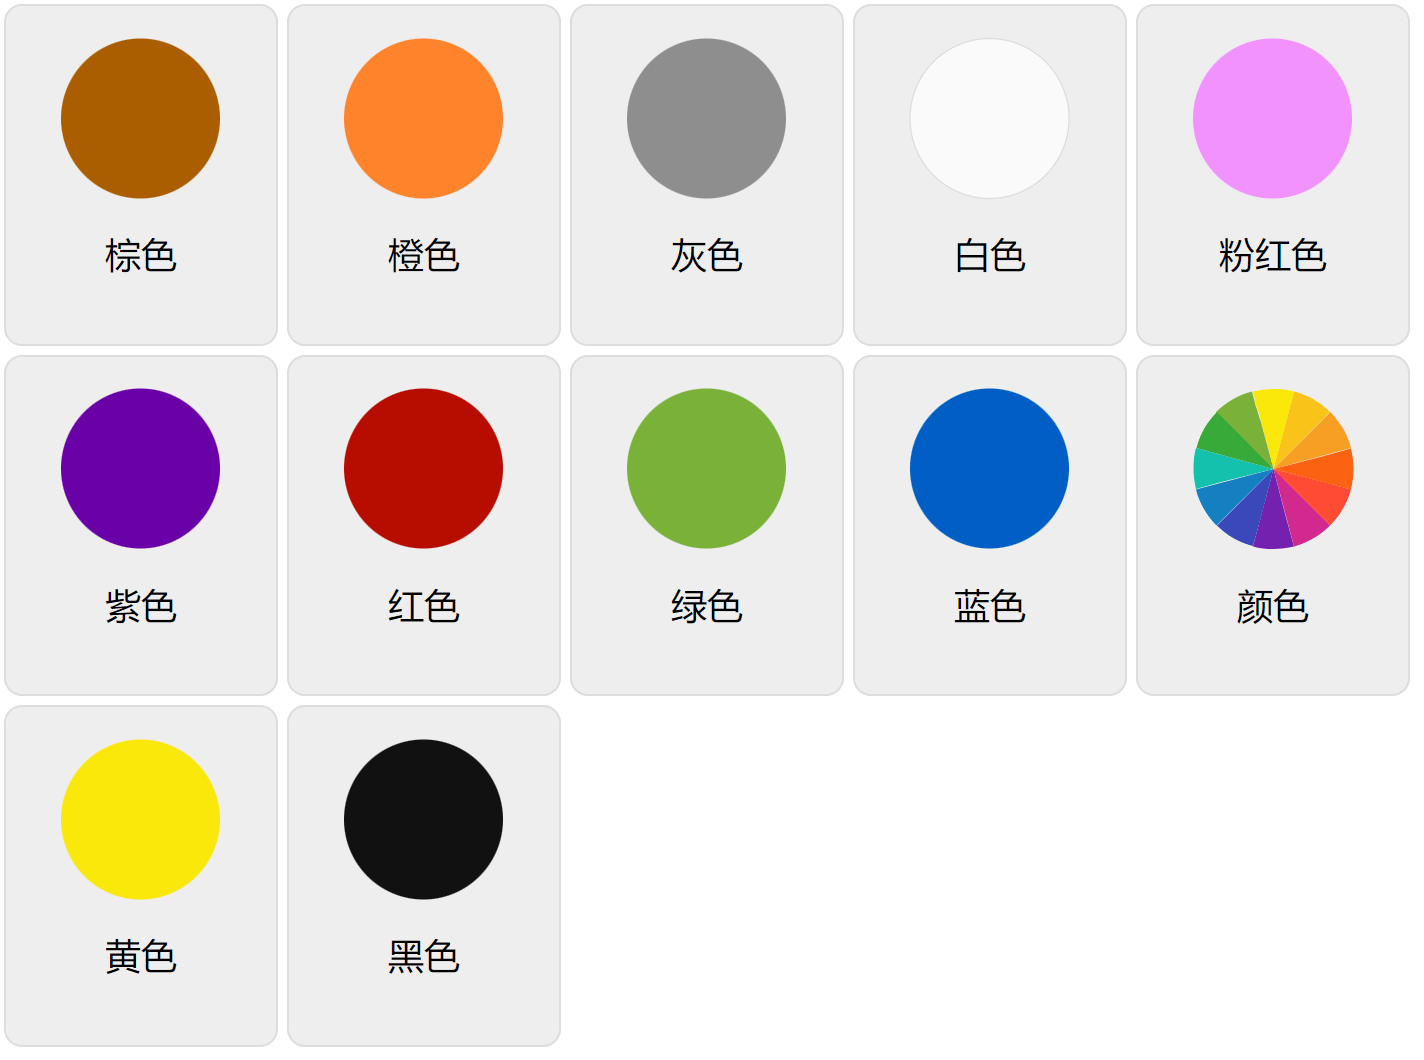 Los colores en chino mandarín